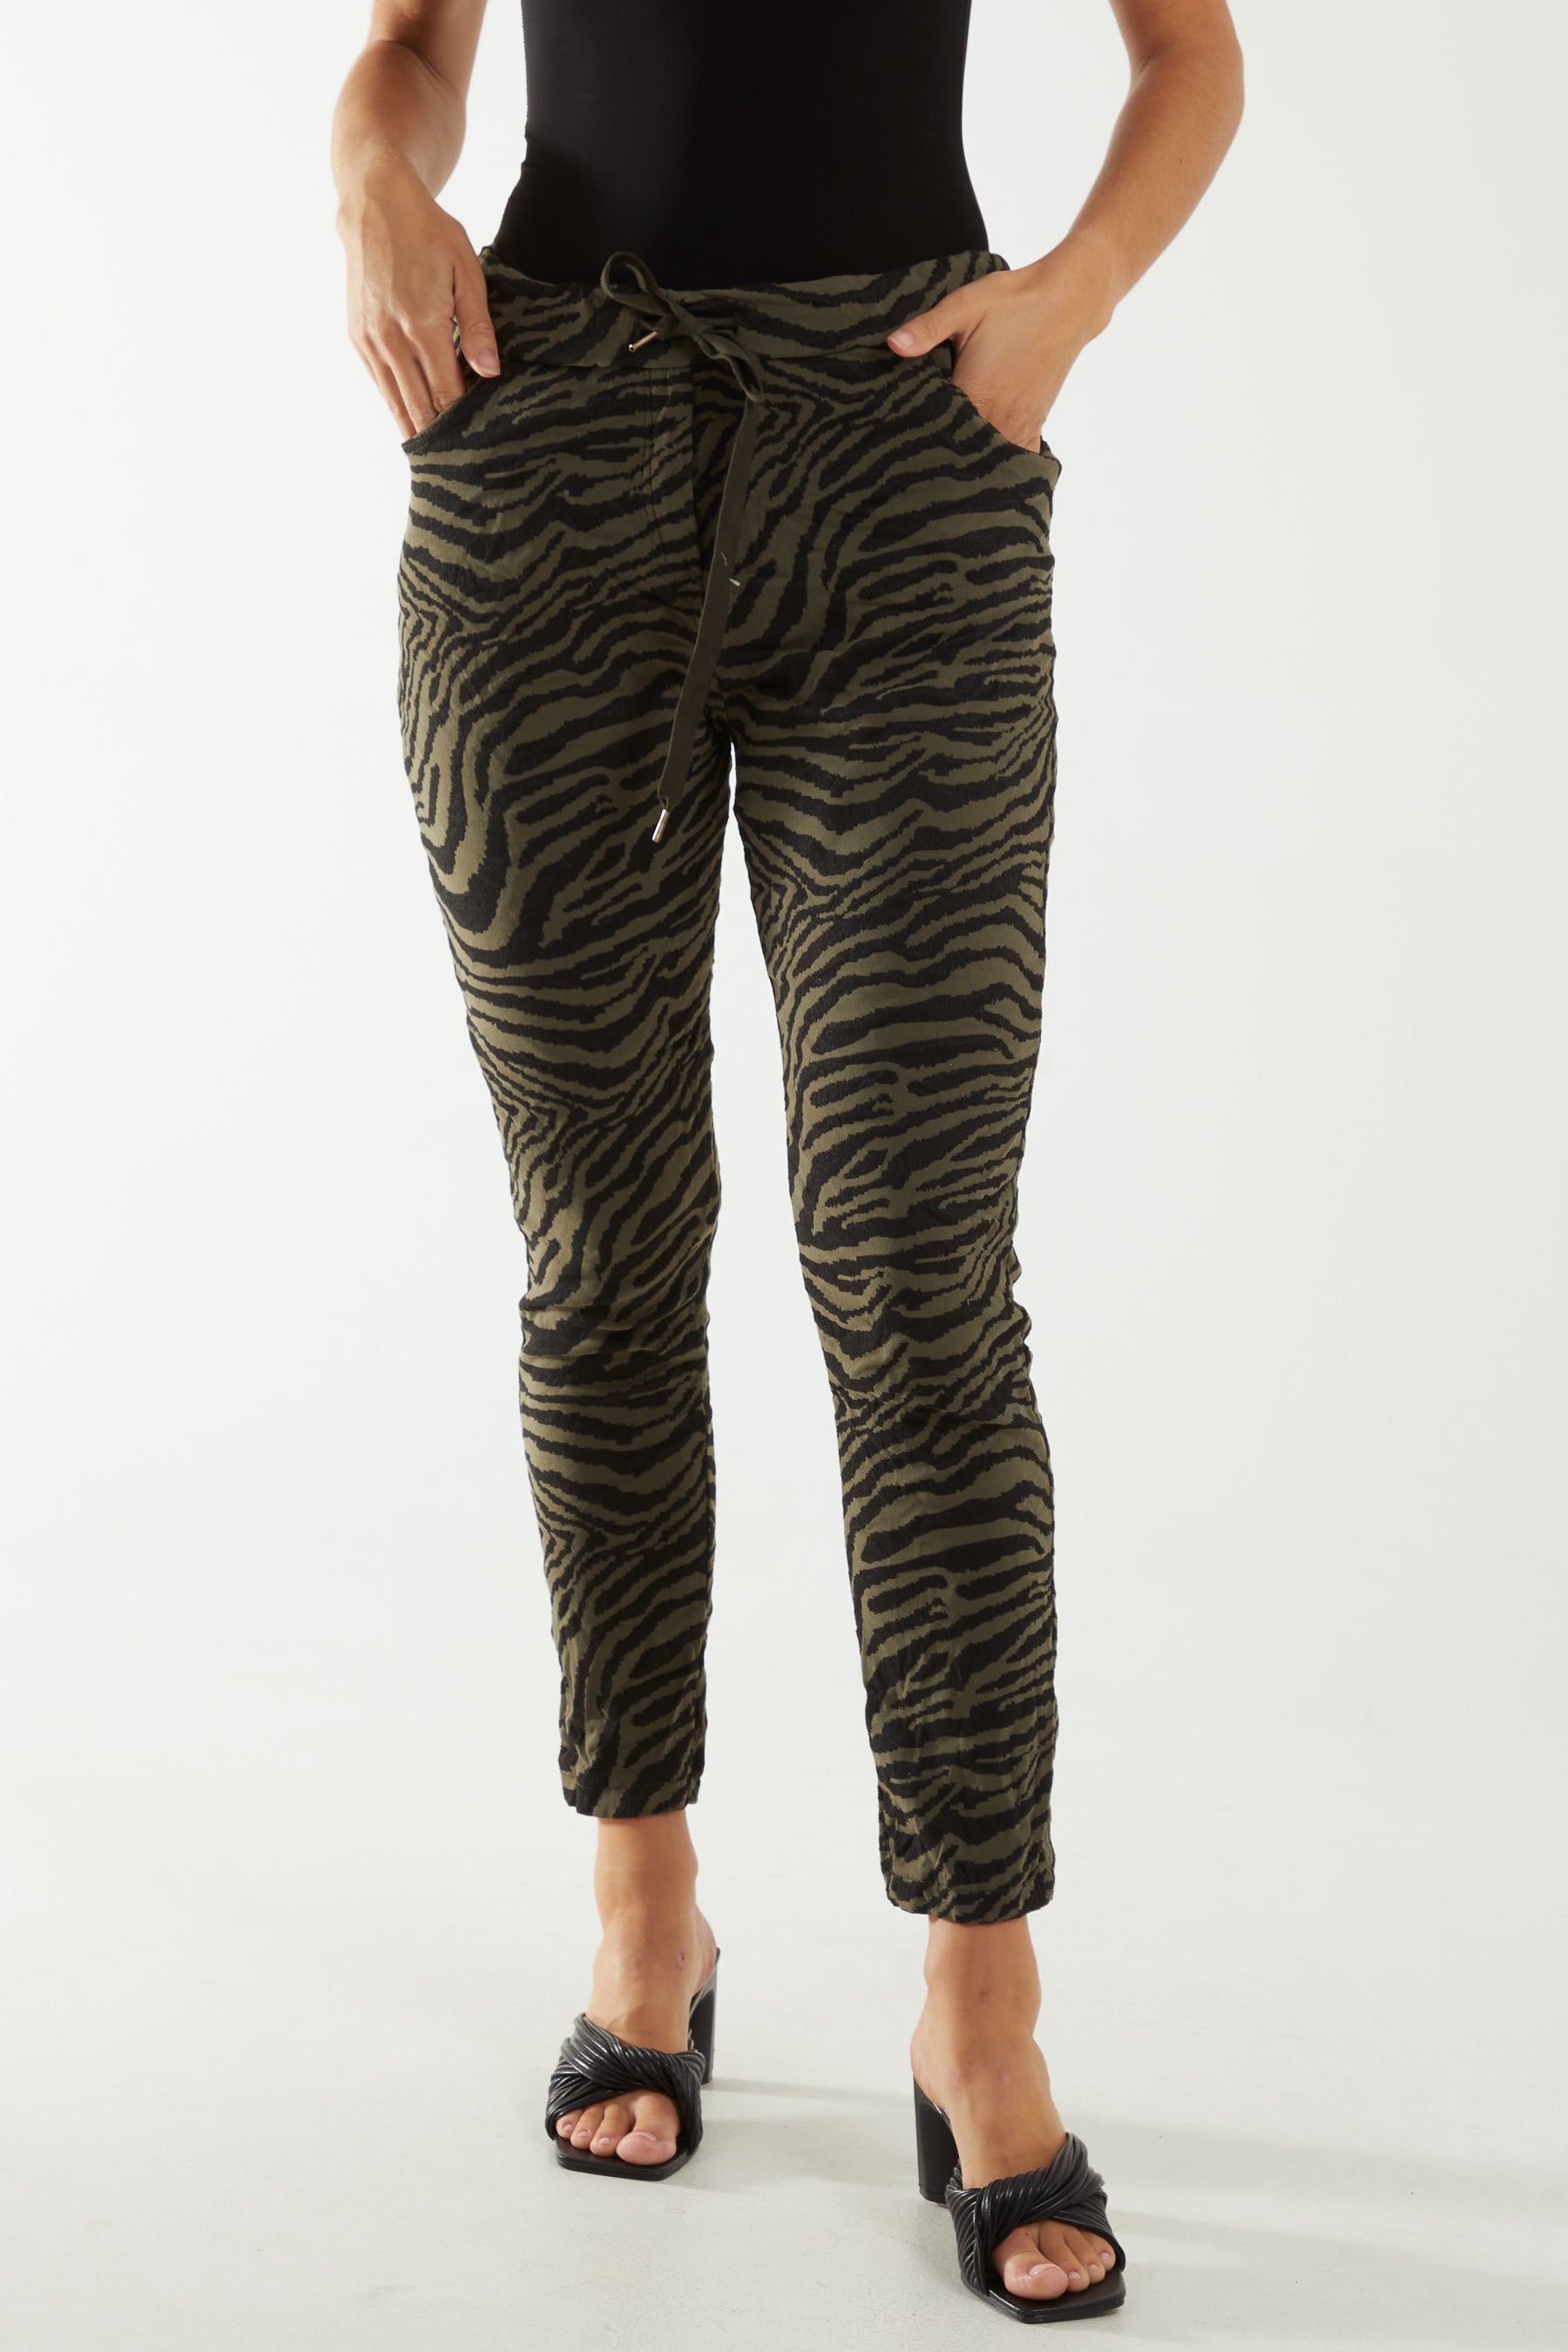 Zebra Print Elasticated Trousers